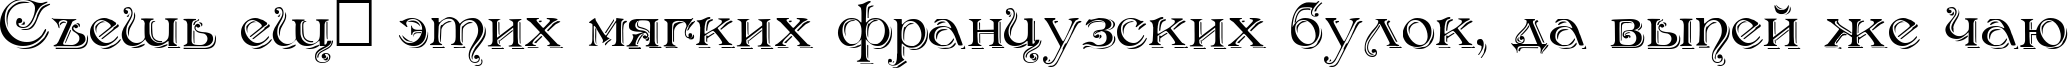 Пример написания шрифтом Antikvar Shadow Roman текста на русском